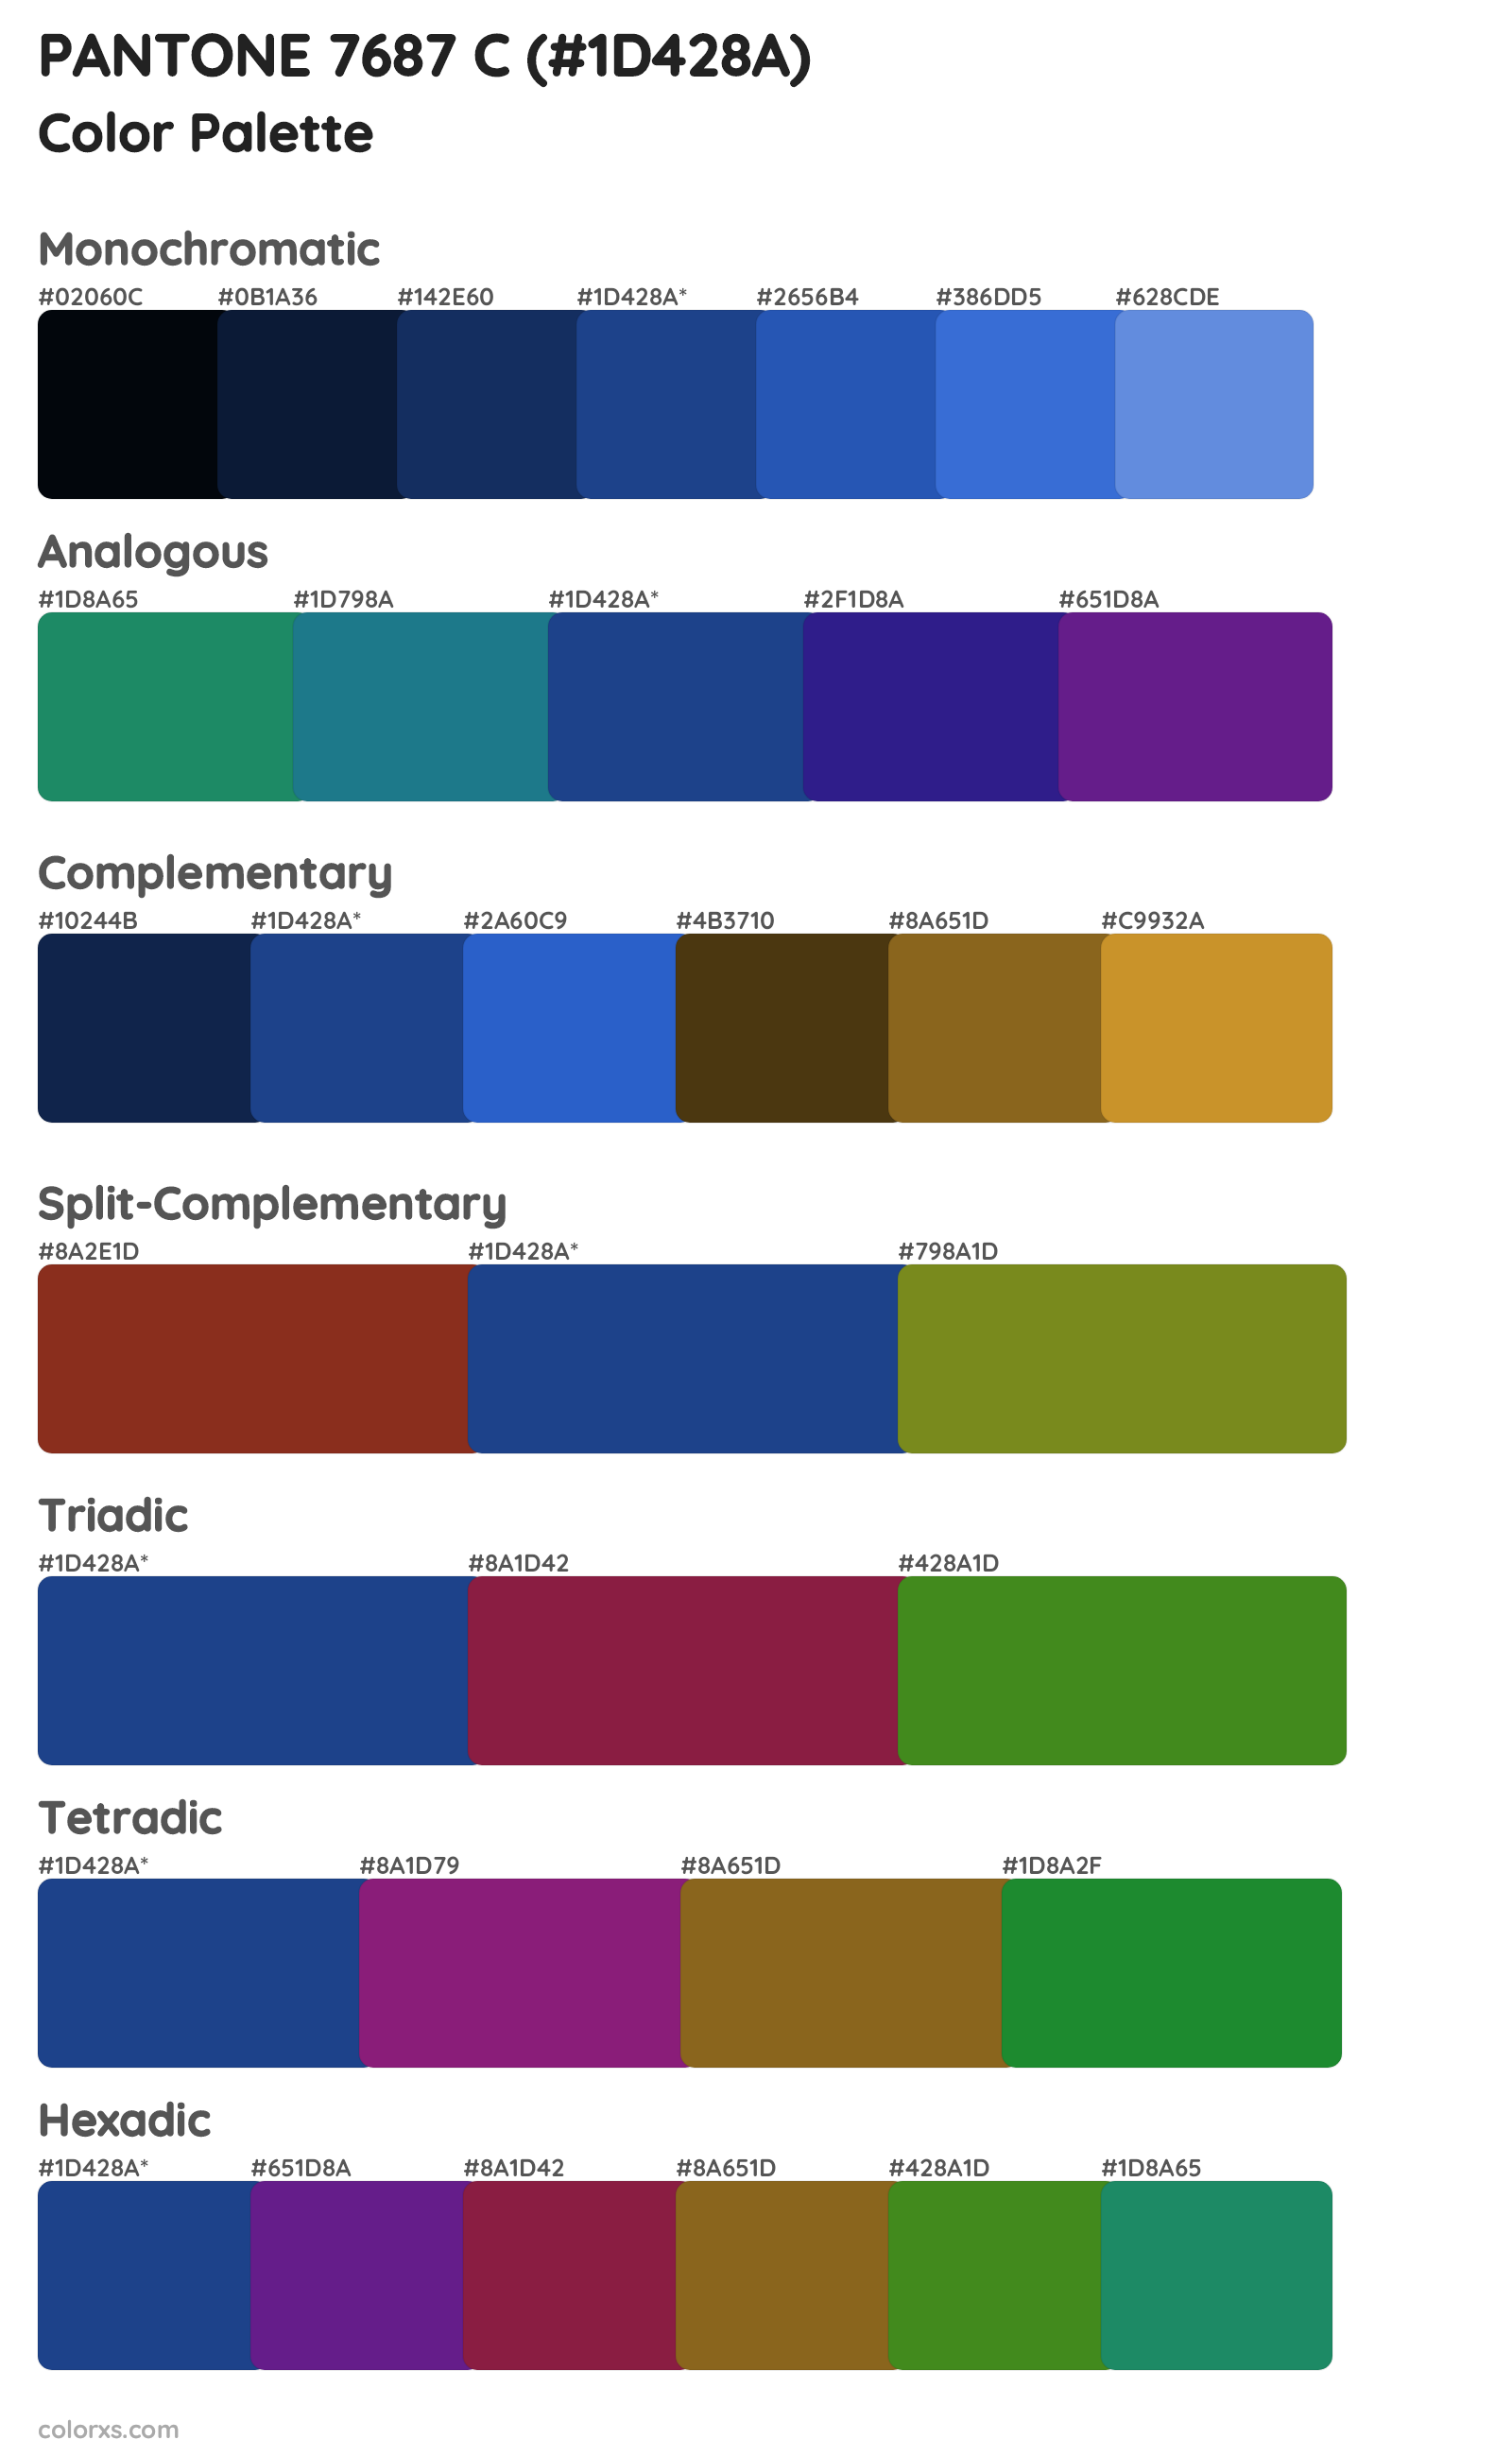 PANTONE 7687 C Color Scheme Palettes